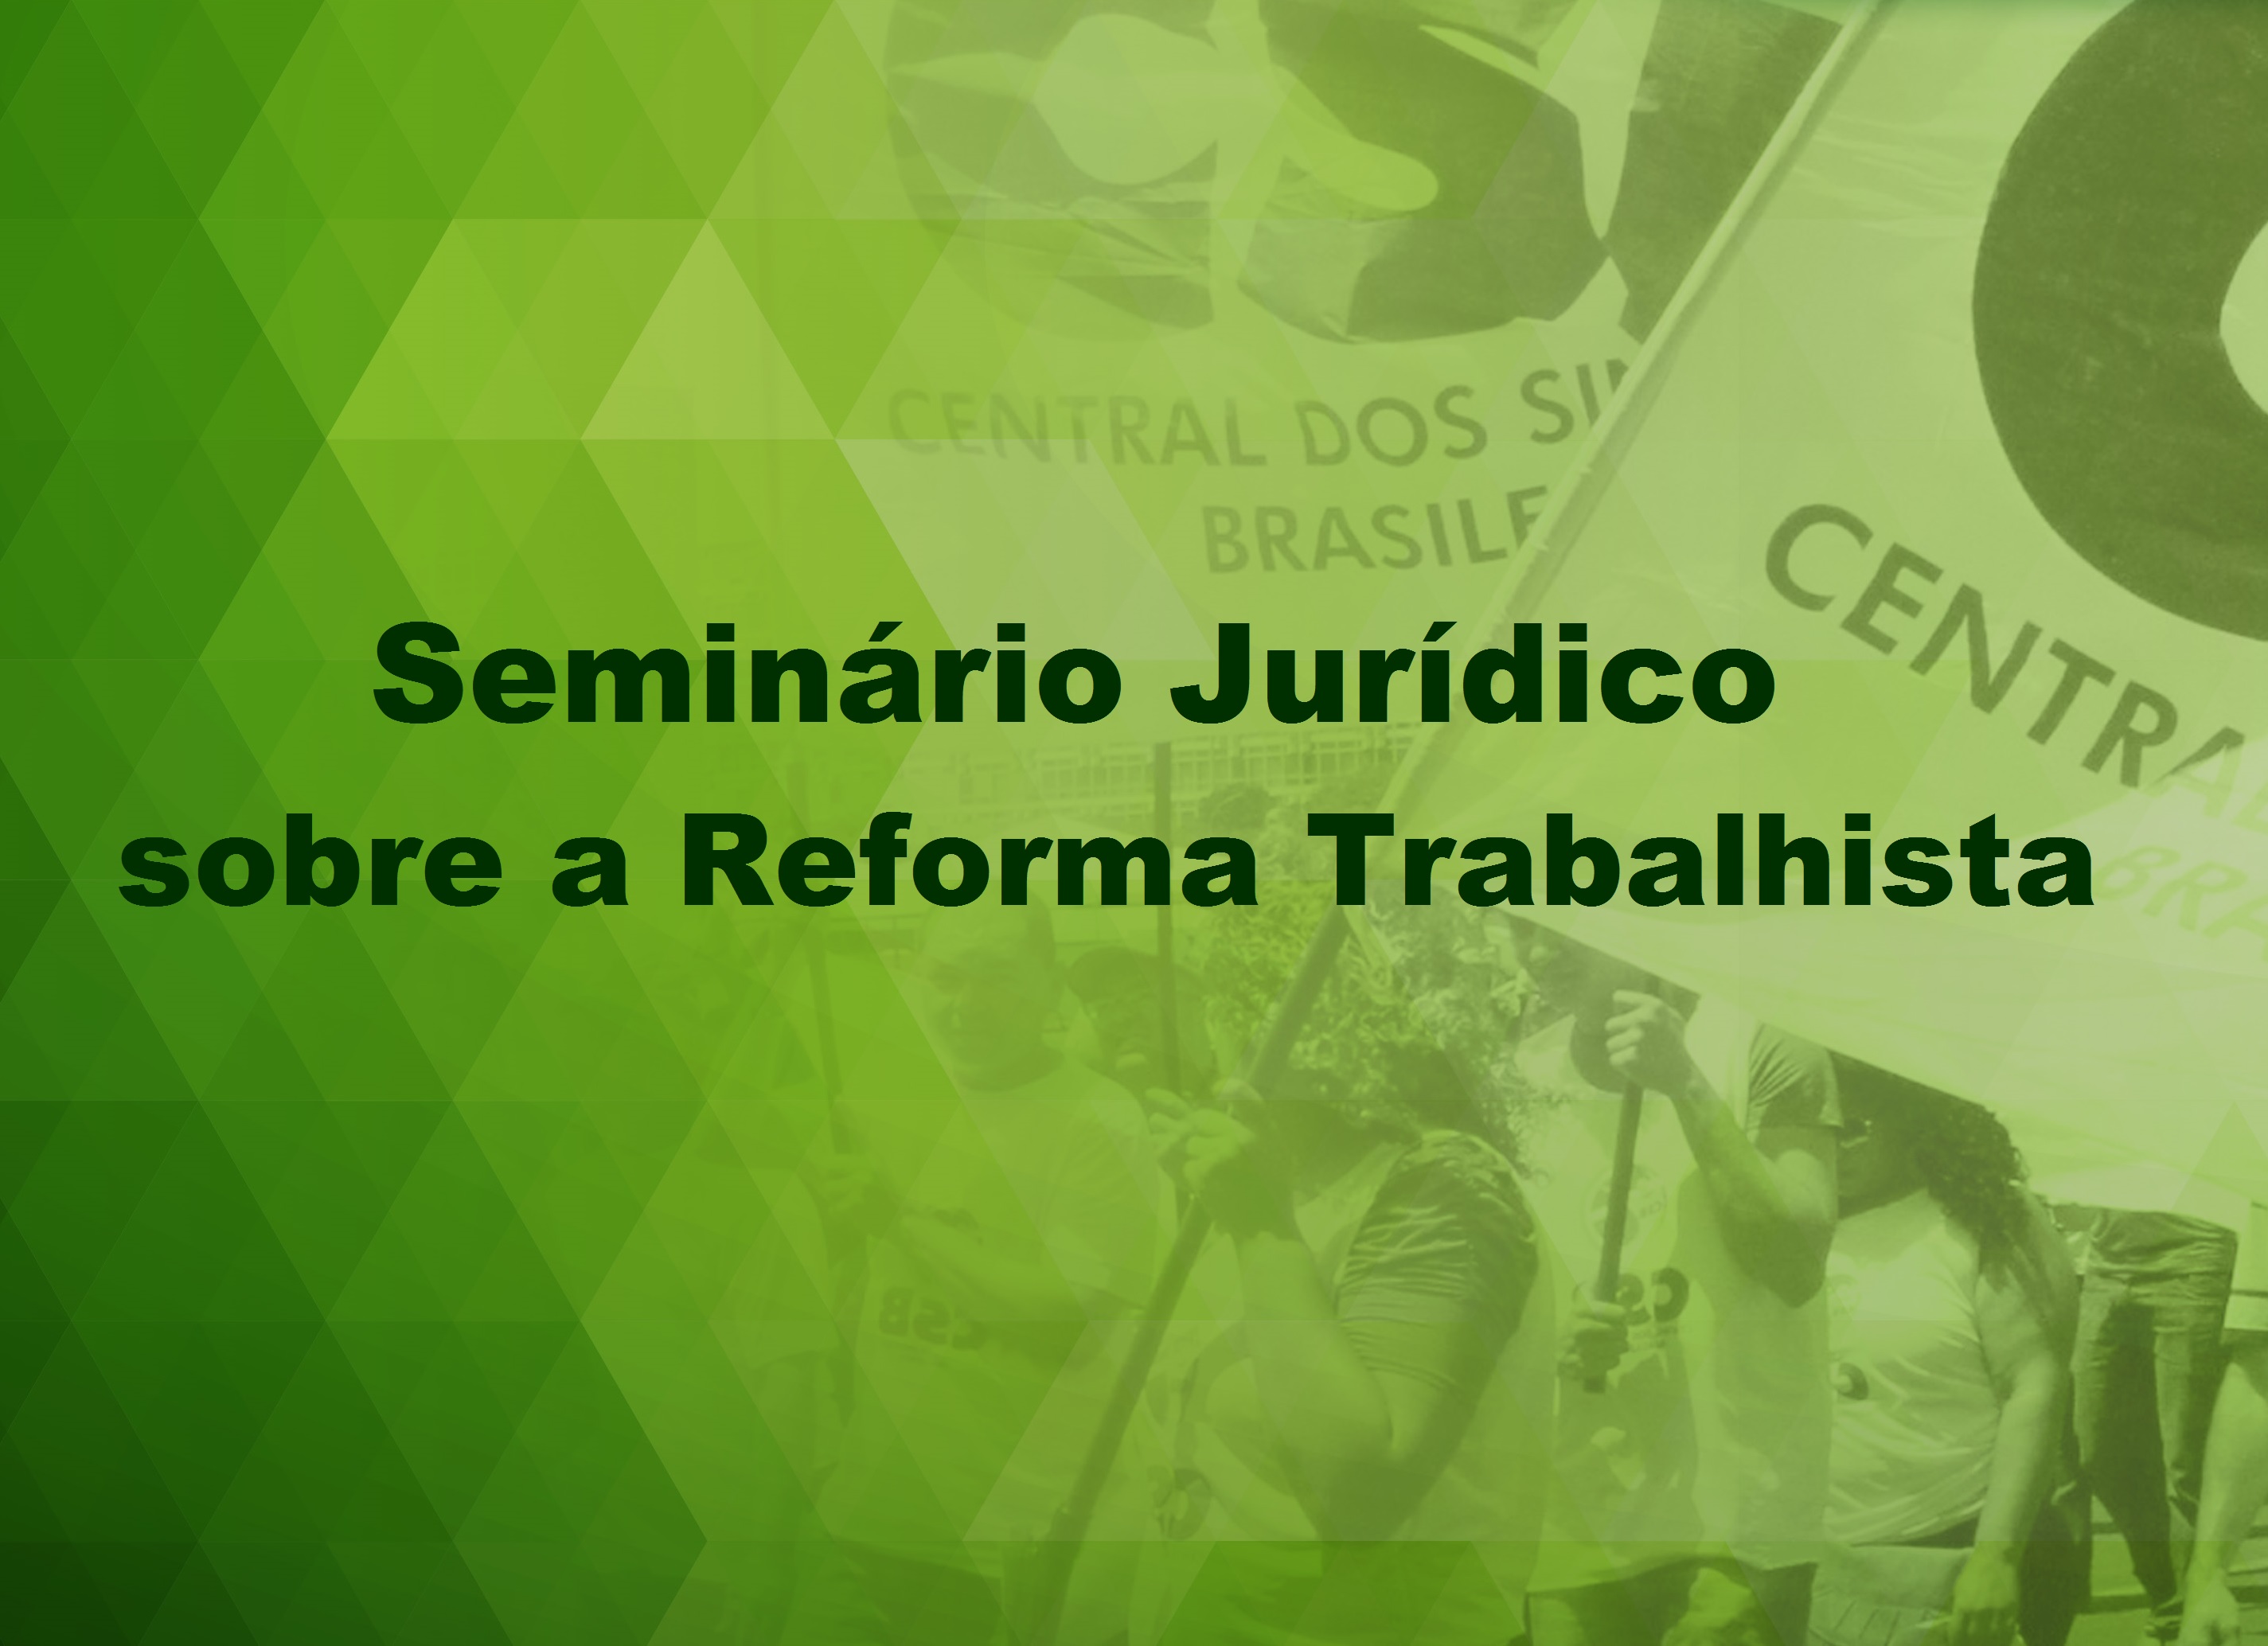 CSB promove Seminário Jurídico sobre a Reforma Trabalhista, em São Paulo